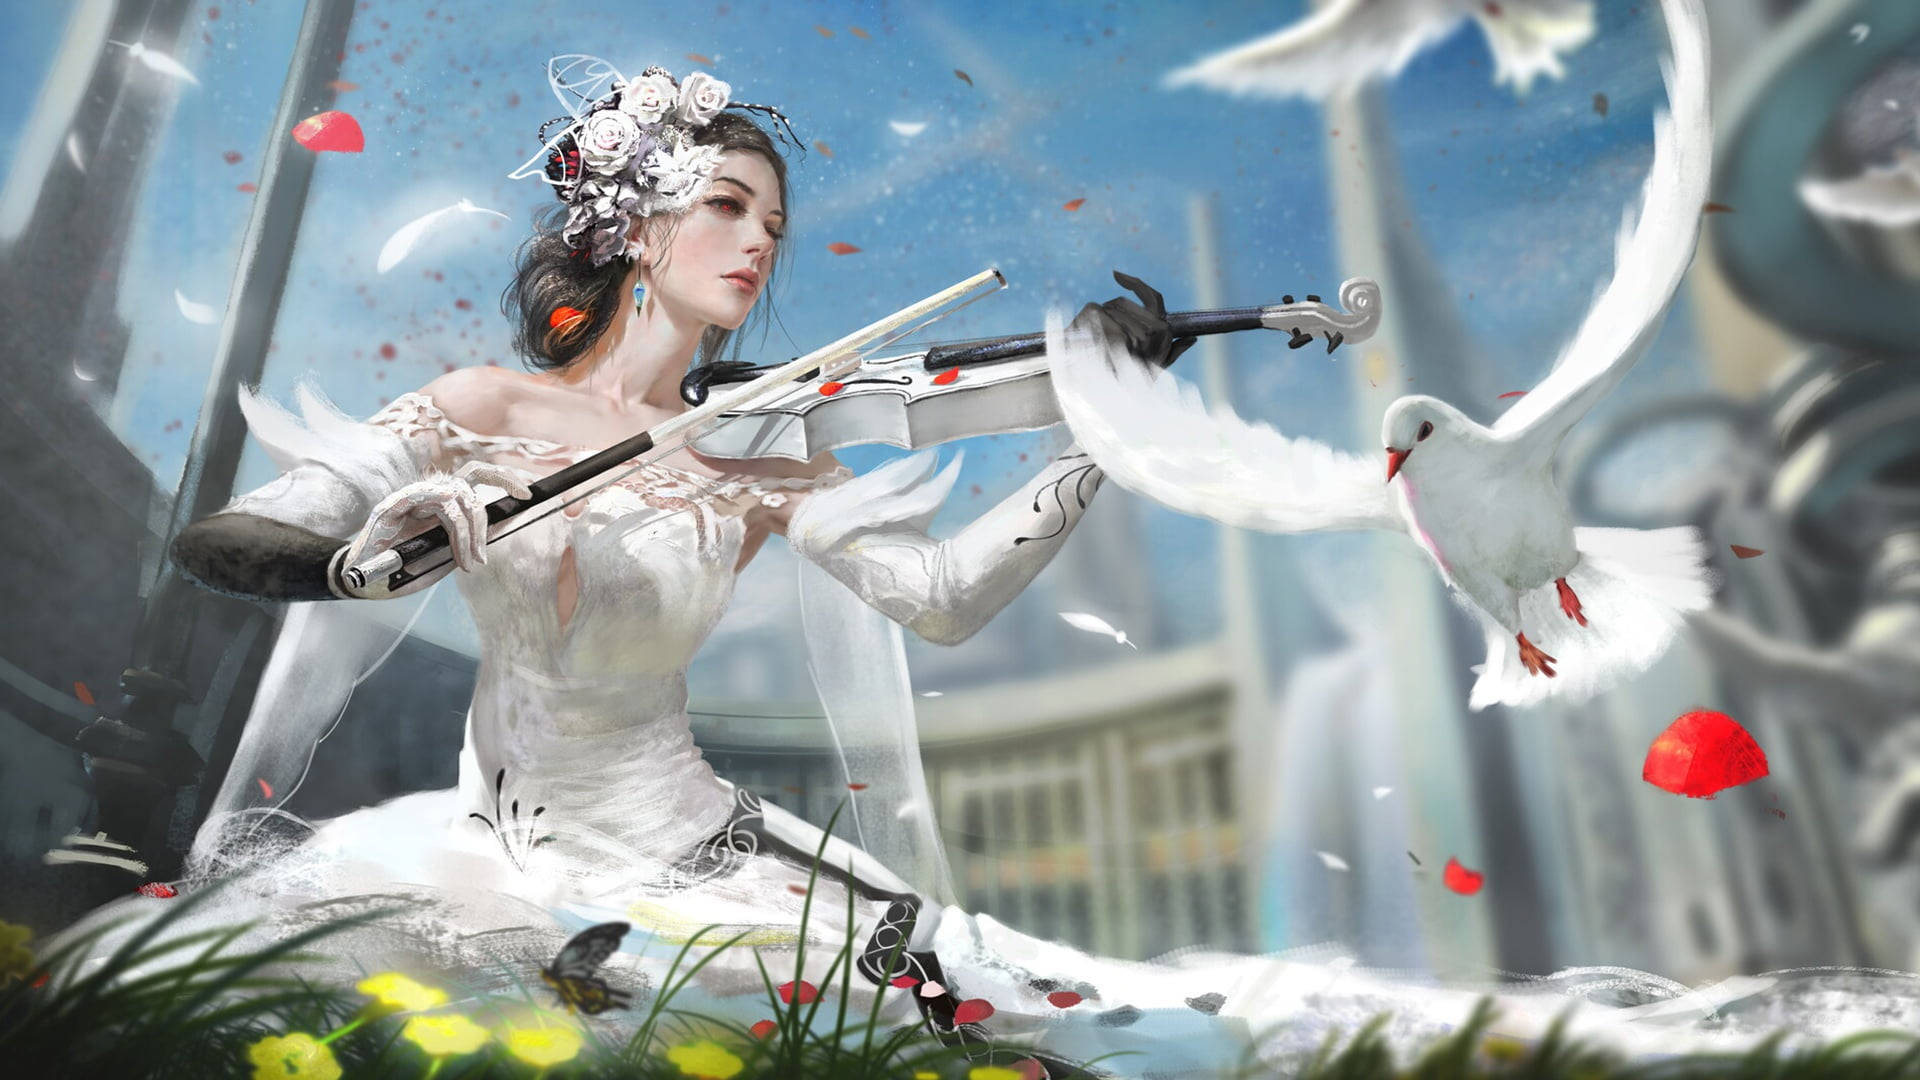 White Dove Digital Art Wallpaper